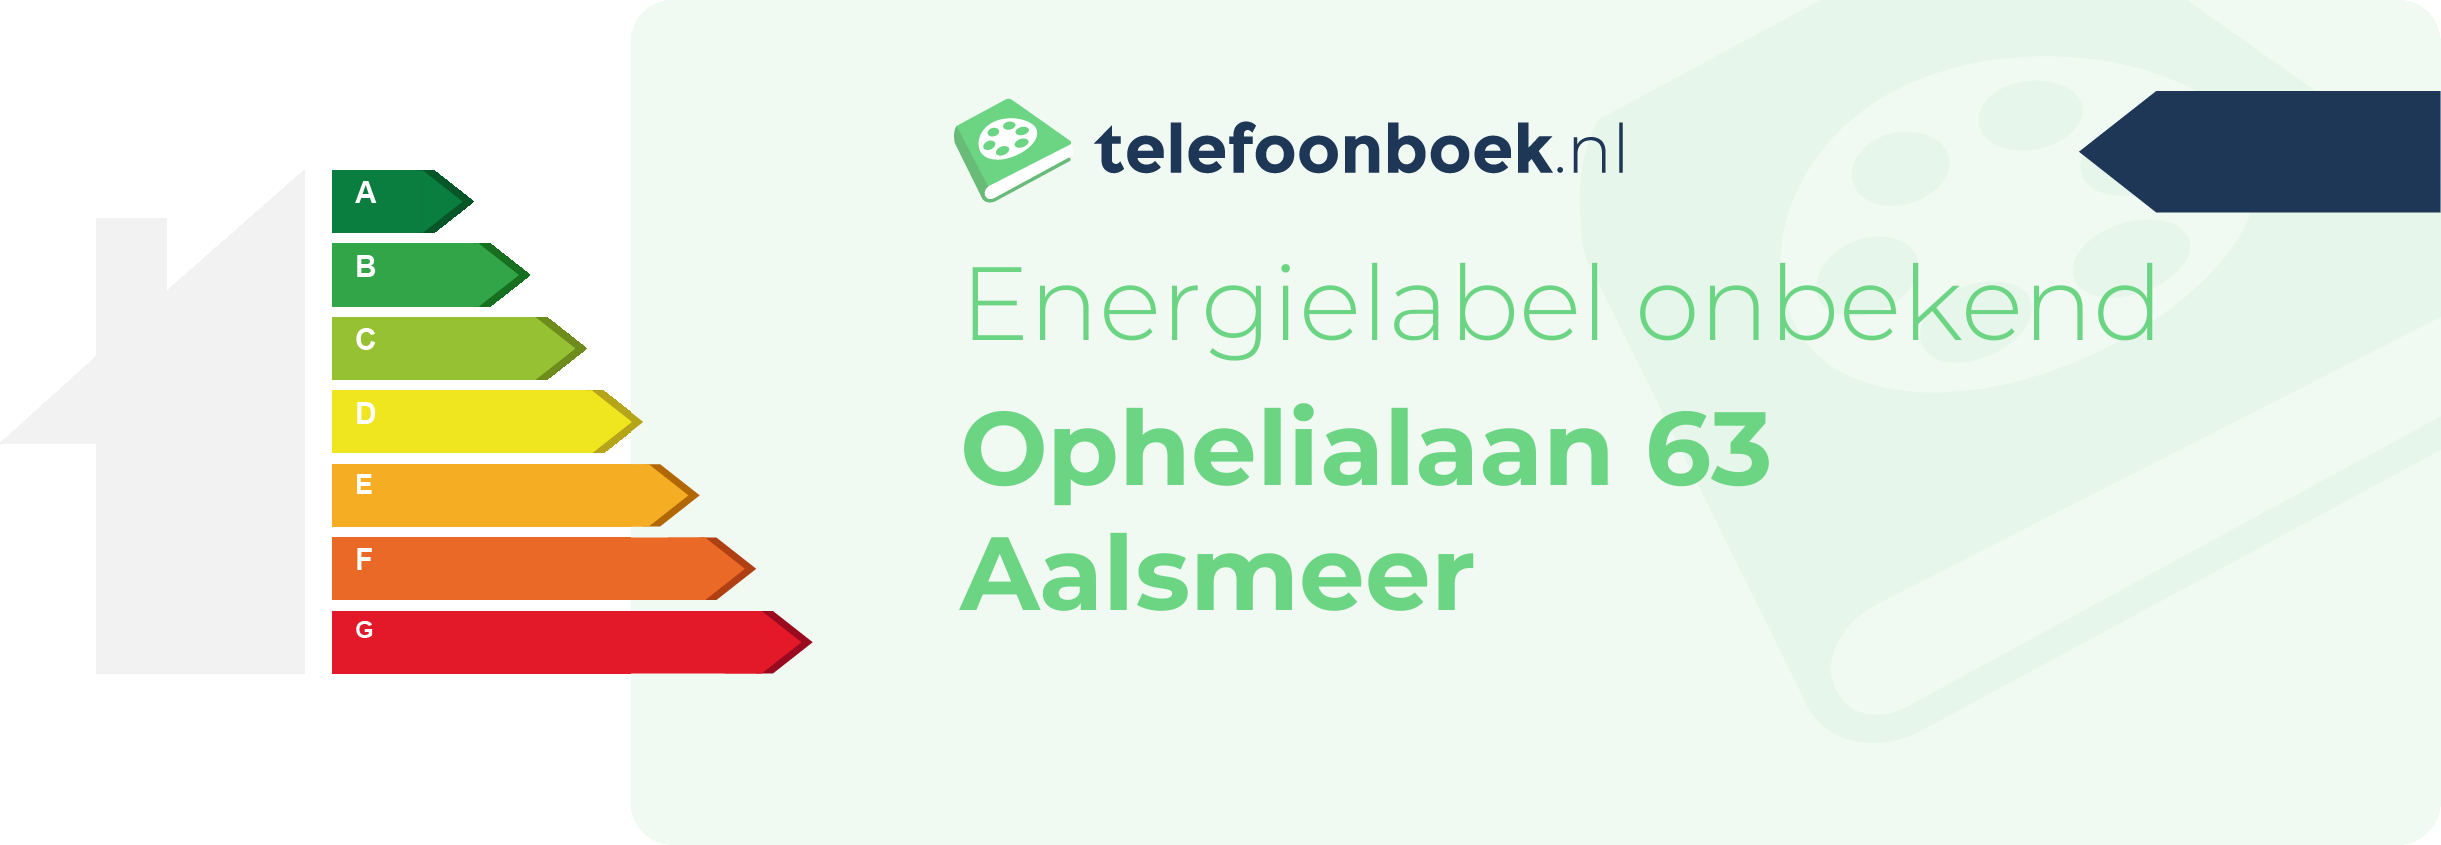 Energielabel Ophelialaan 63 Aalsmeer